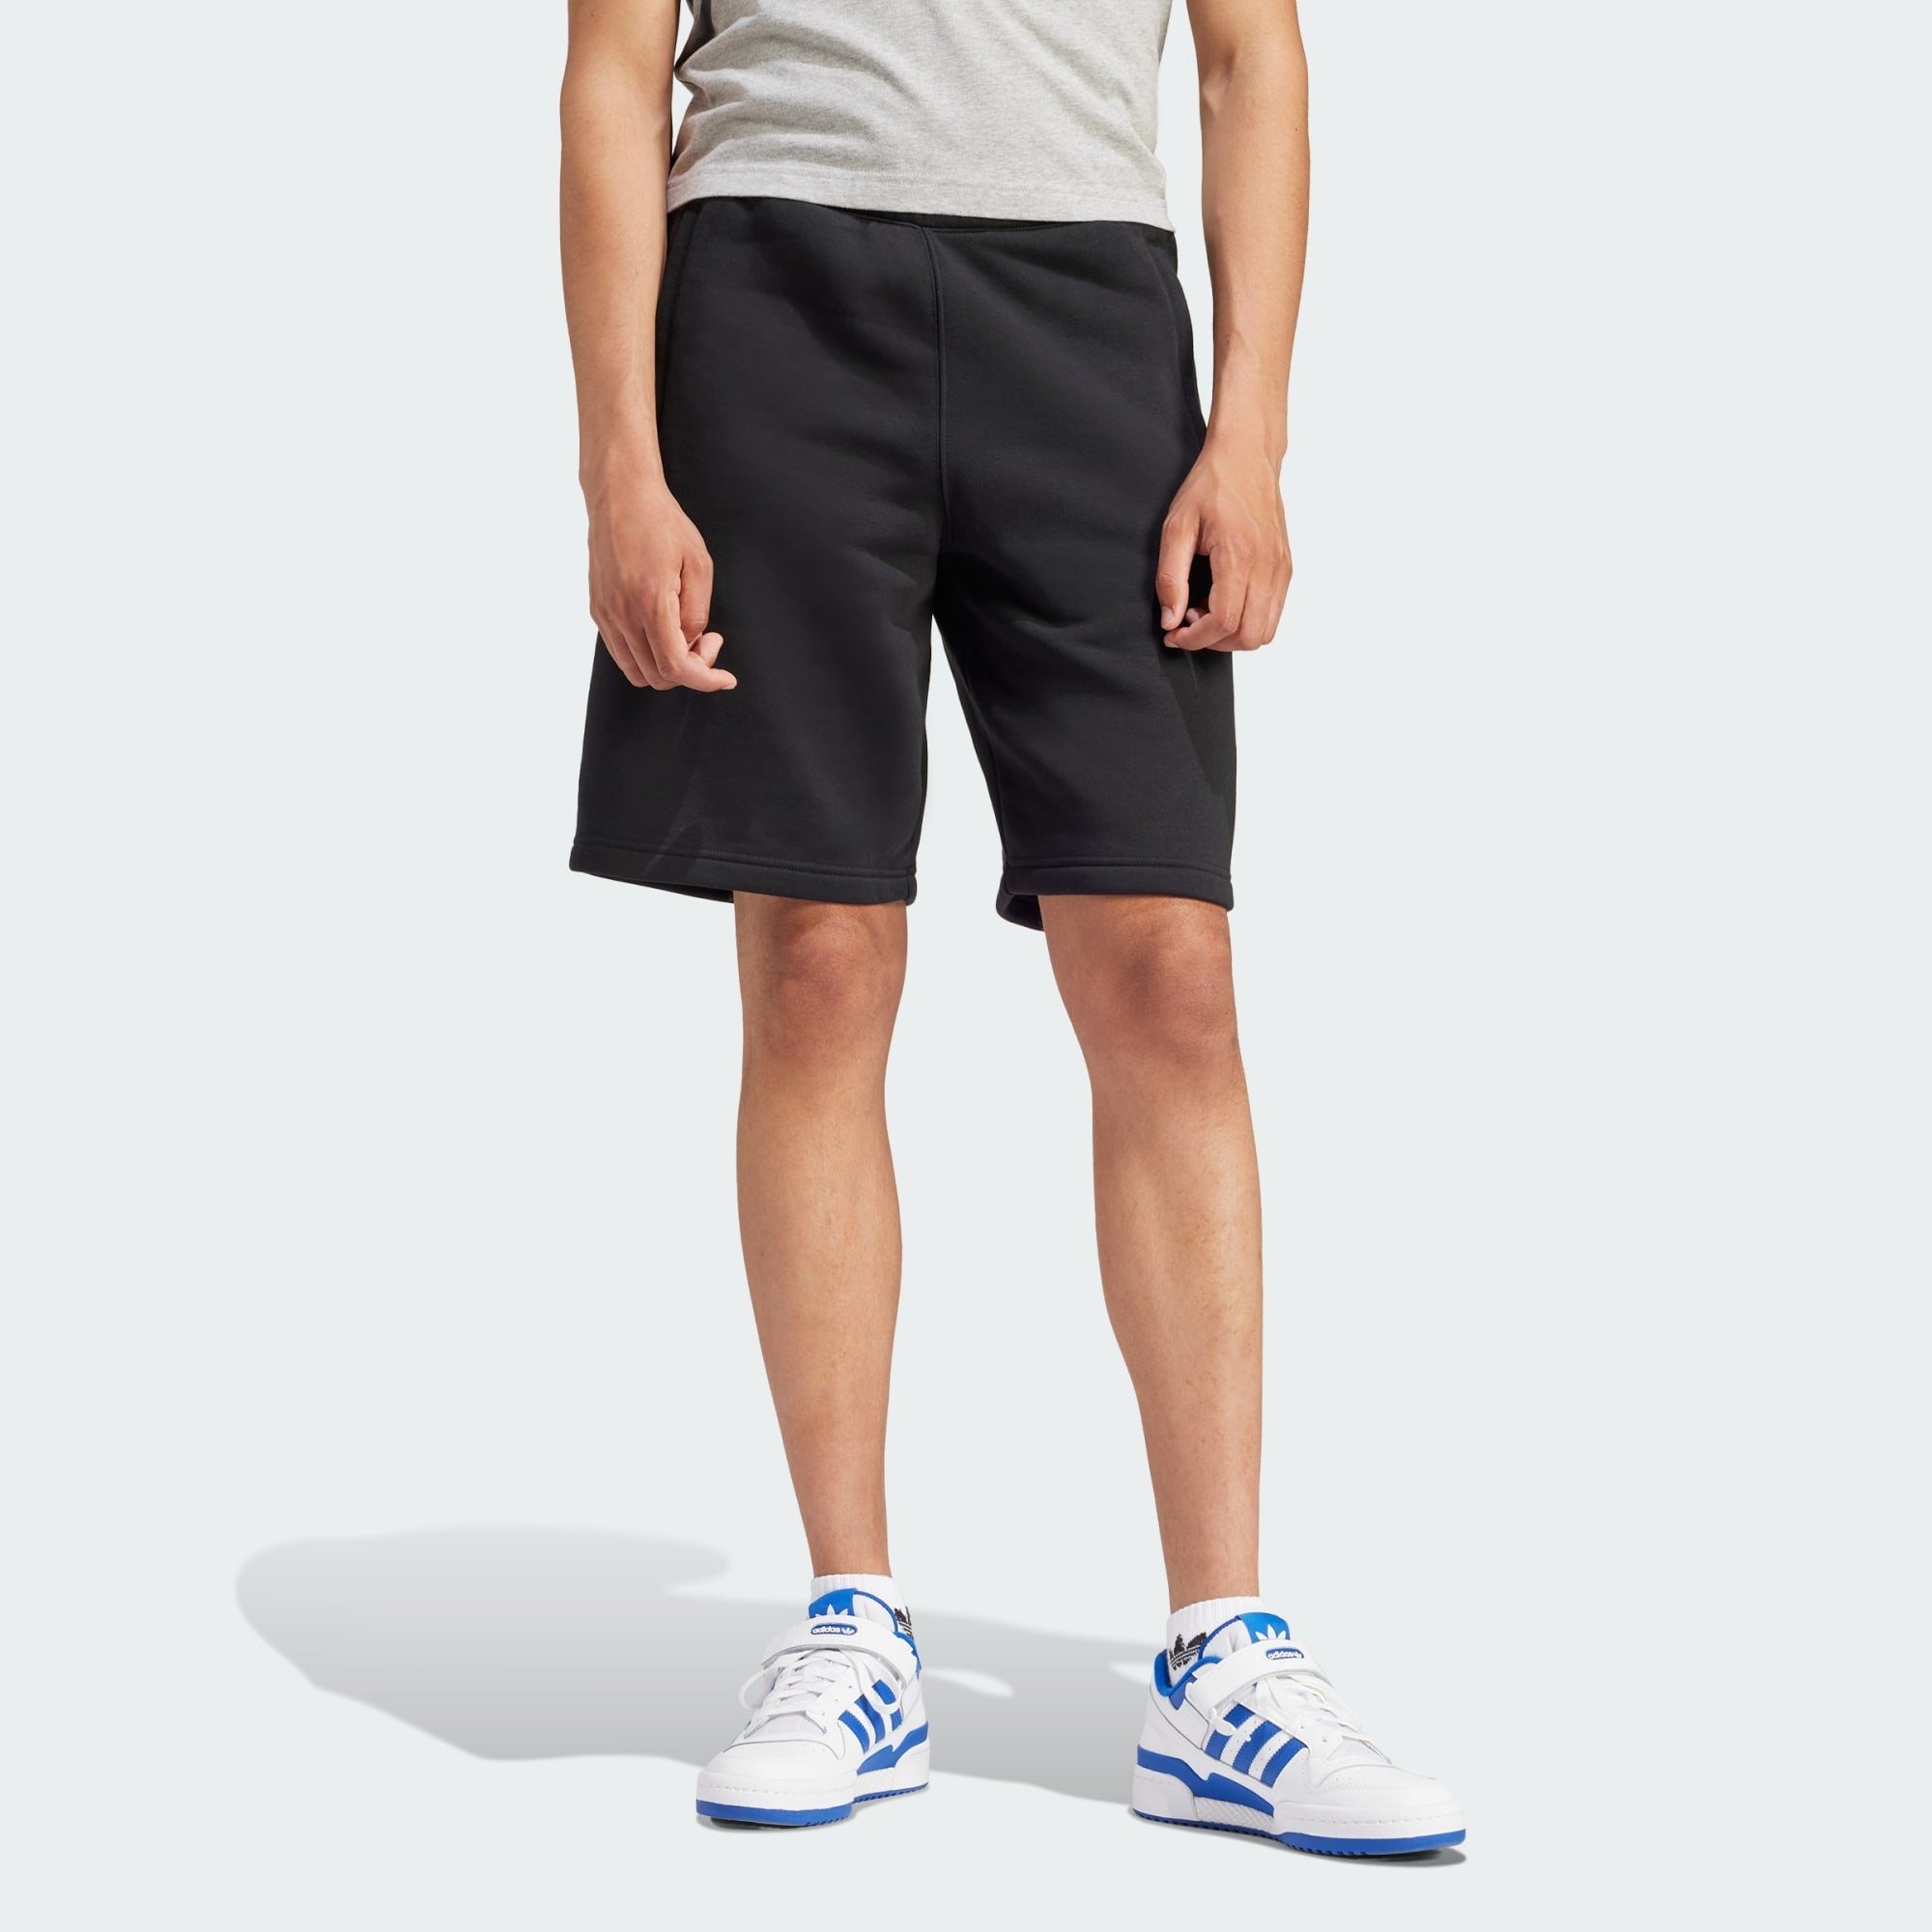 Super willkommen adidas Originals Shorts und 189 trägt Größe ist ESSENTIALS cm Model Dieses groß SHORTS, TREFOIL